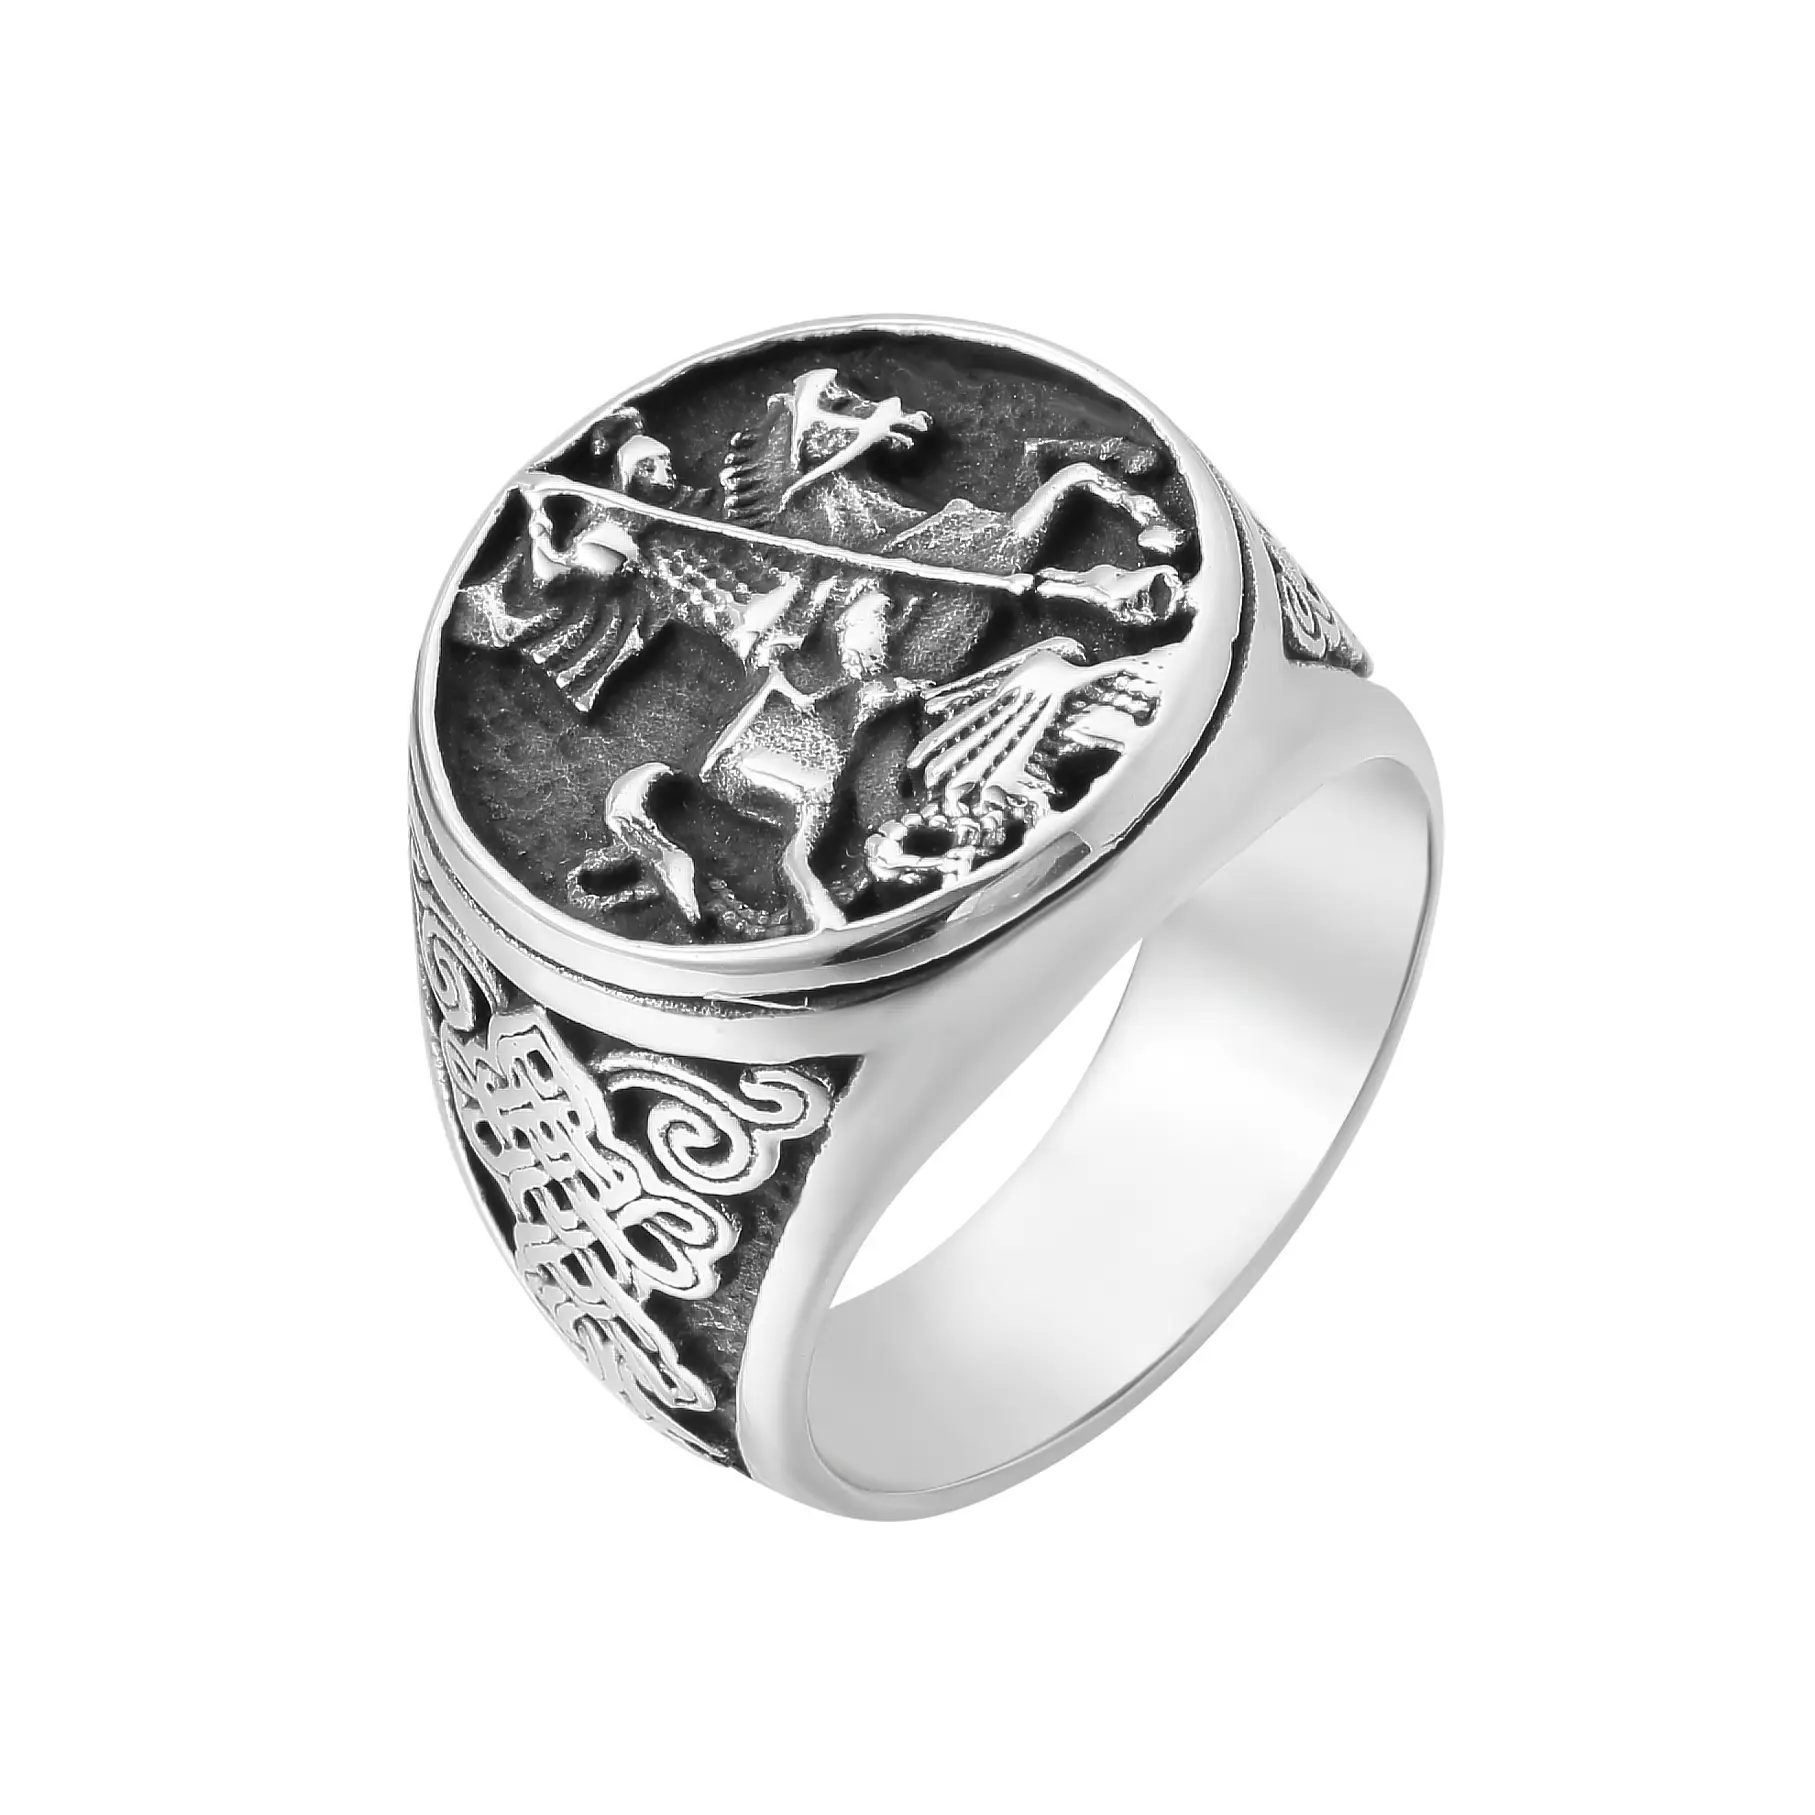 Nuevo diseño Vintage joyería de acero inoxidable Dragon Killer St. George anillo religioso para hombres